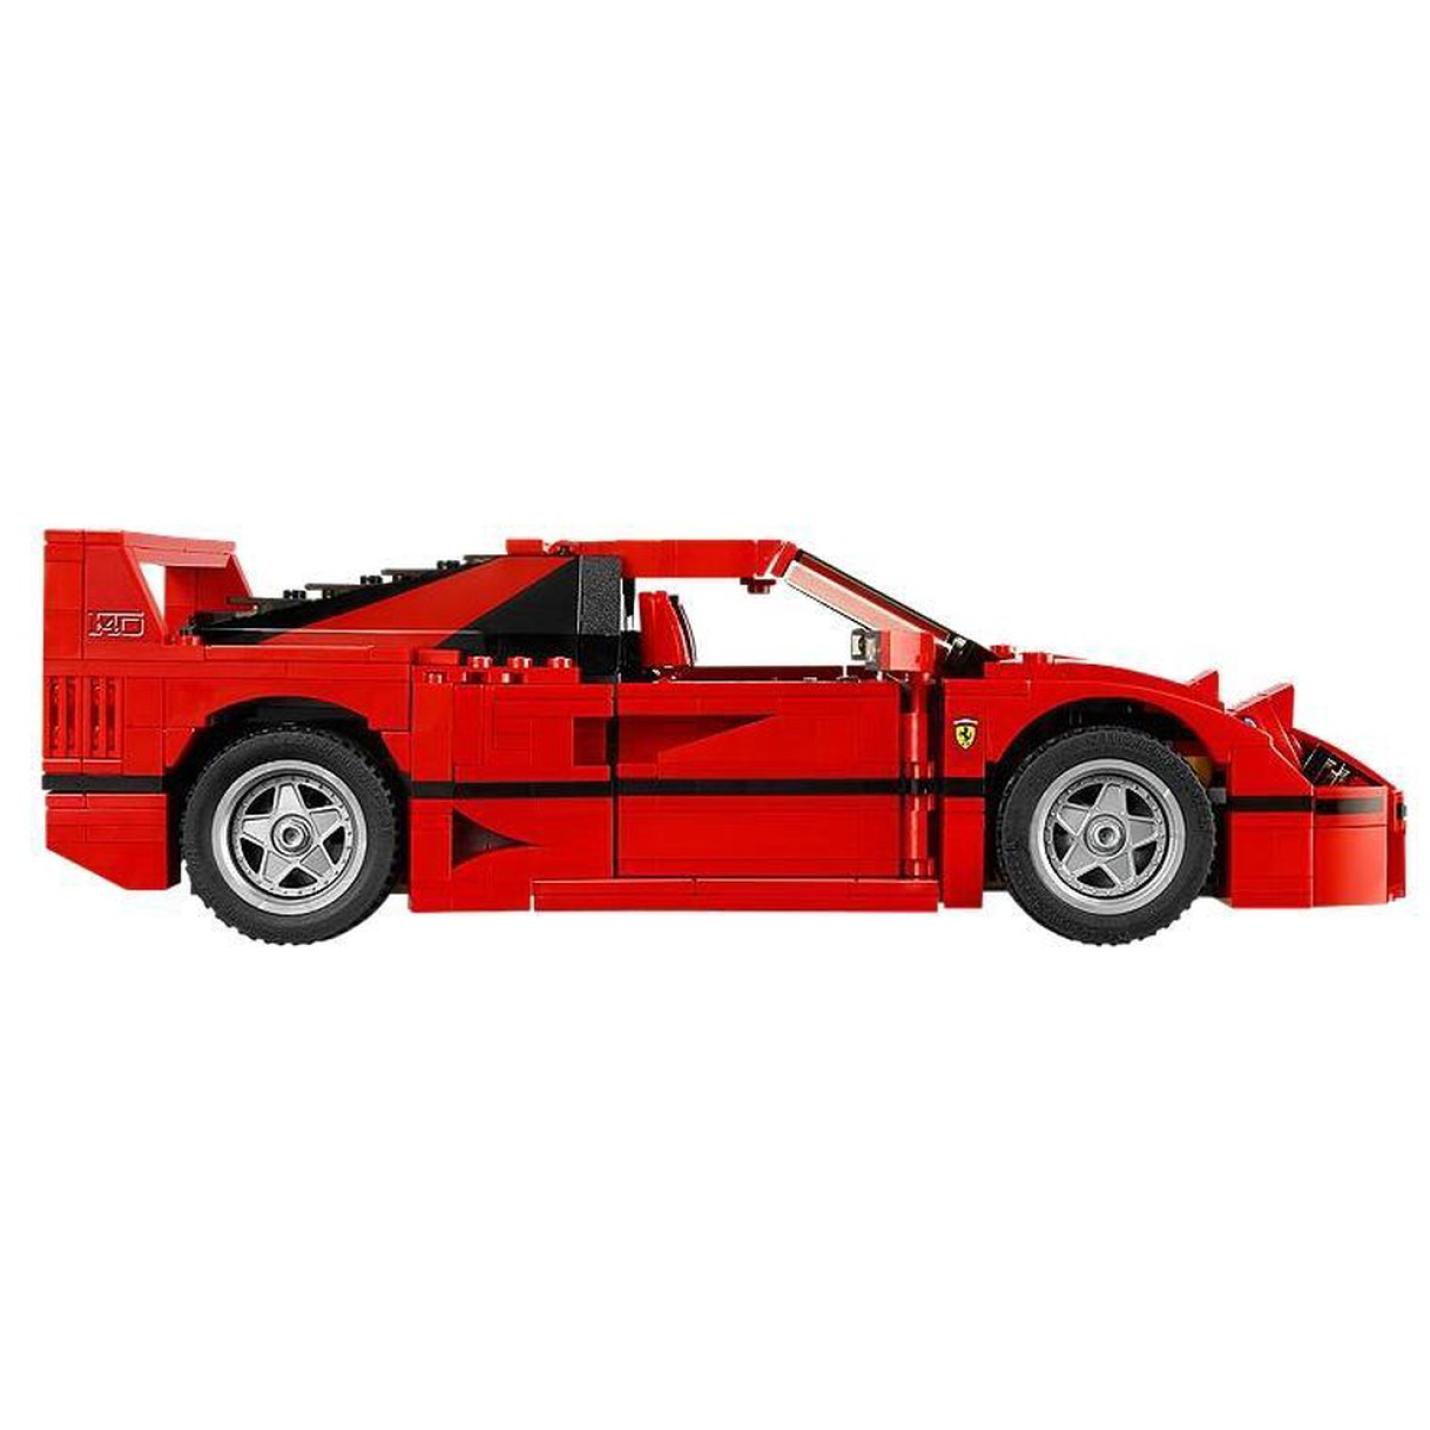 LEGO Creator Expert Ferrari F40 - 10248 14